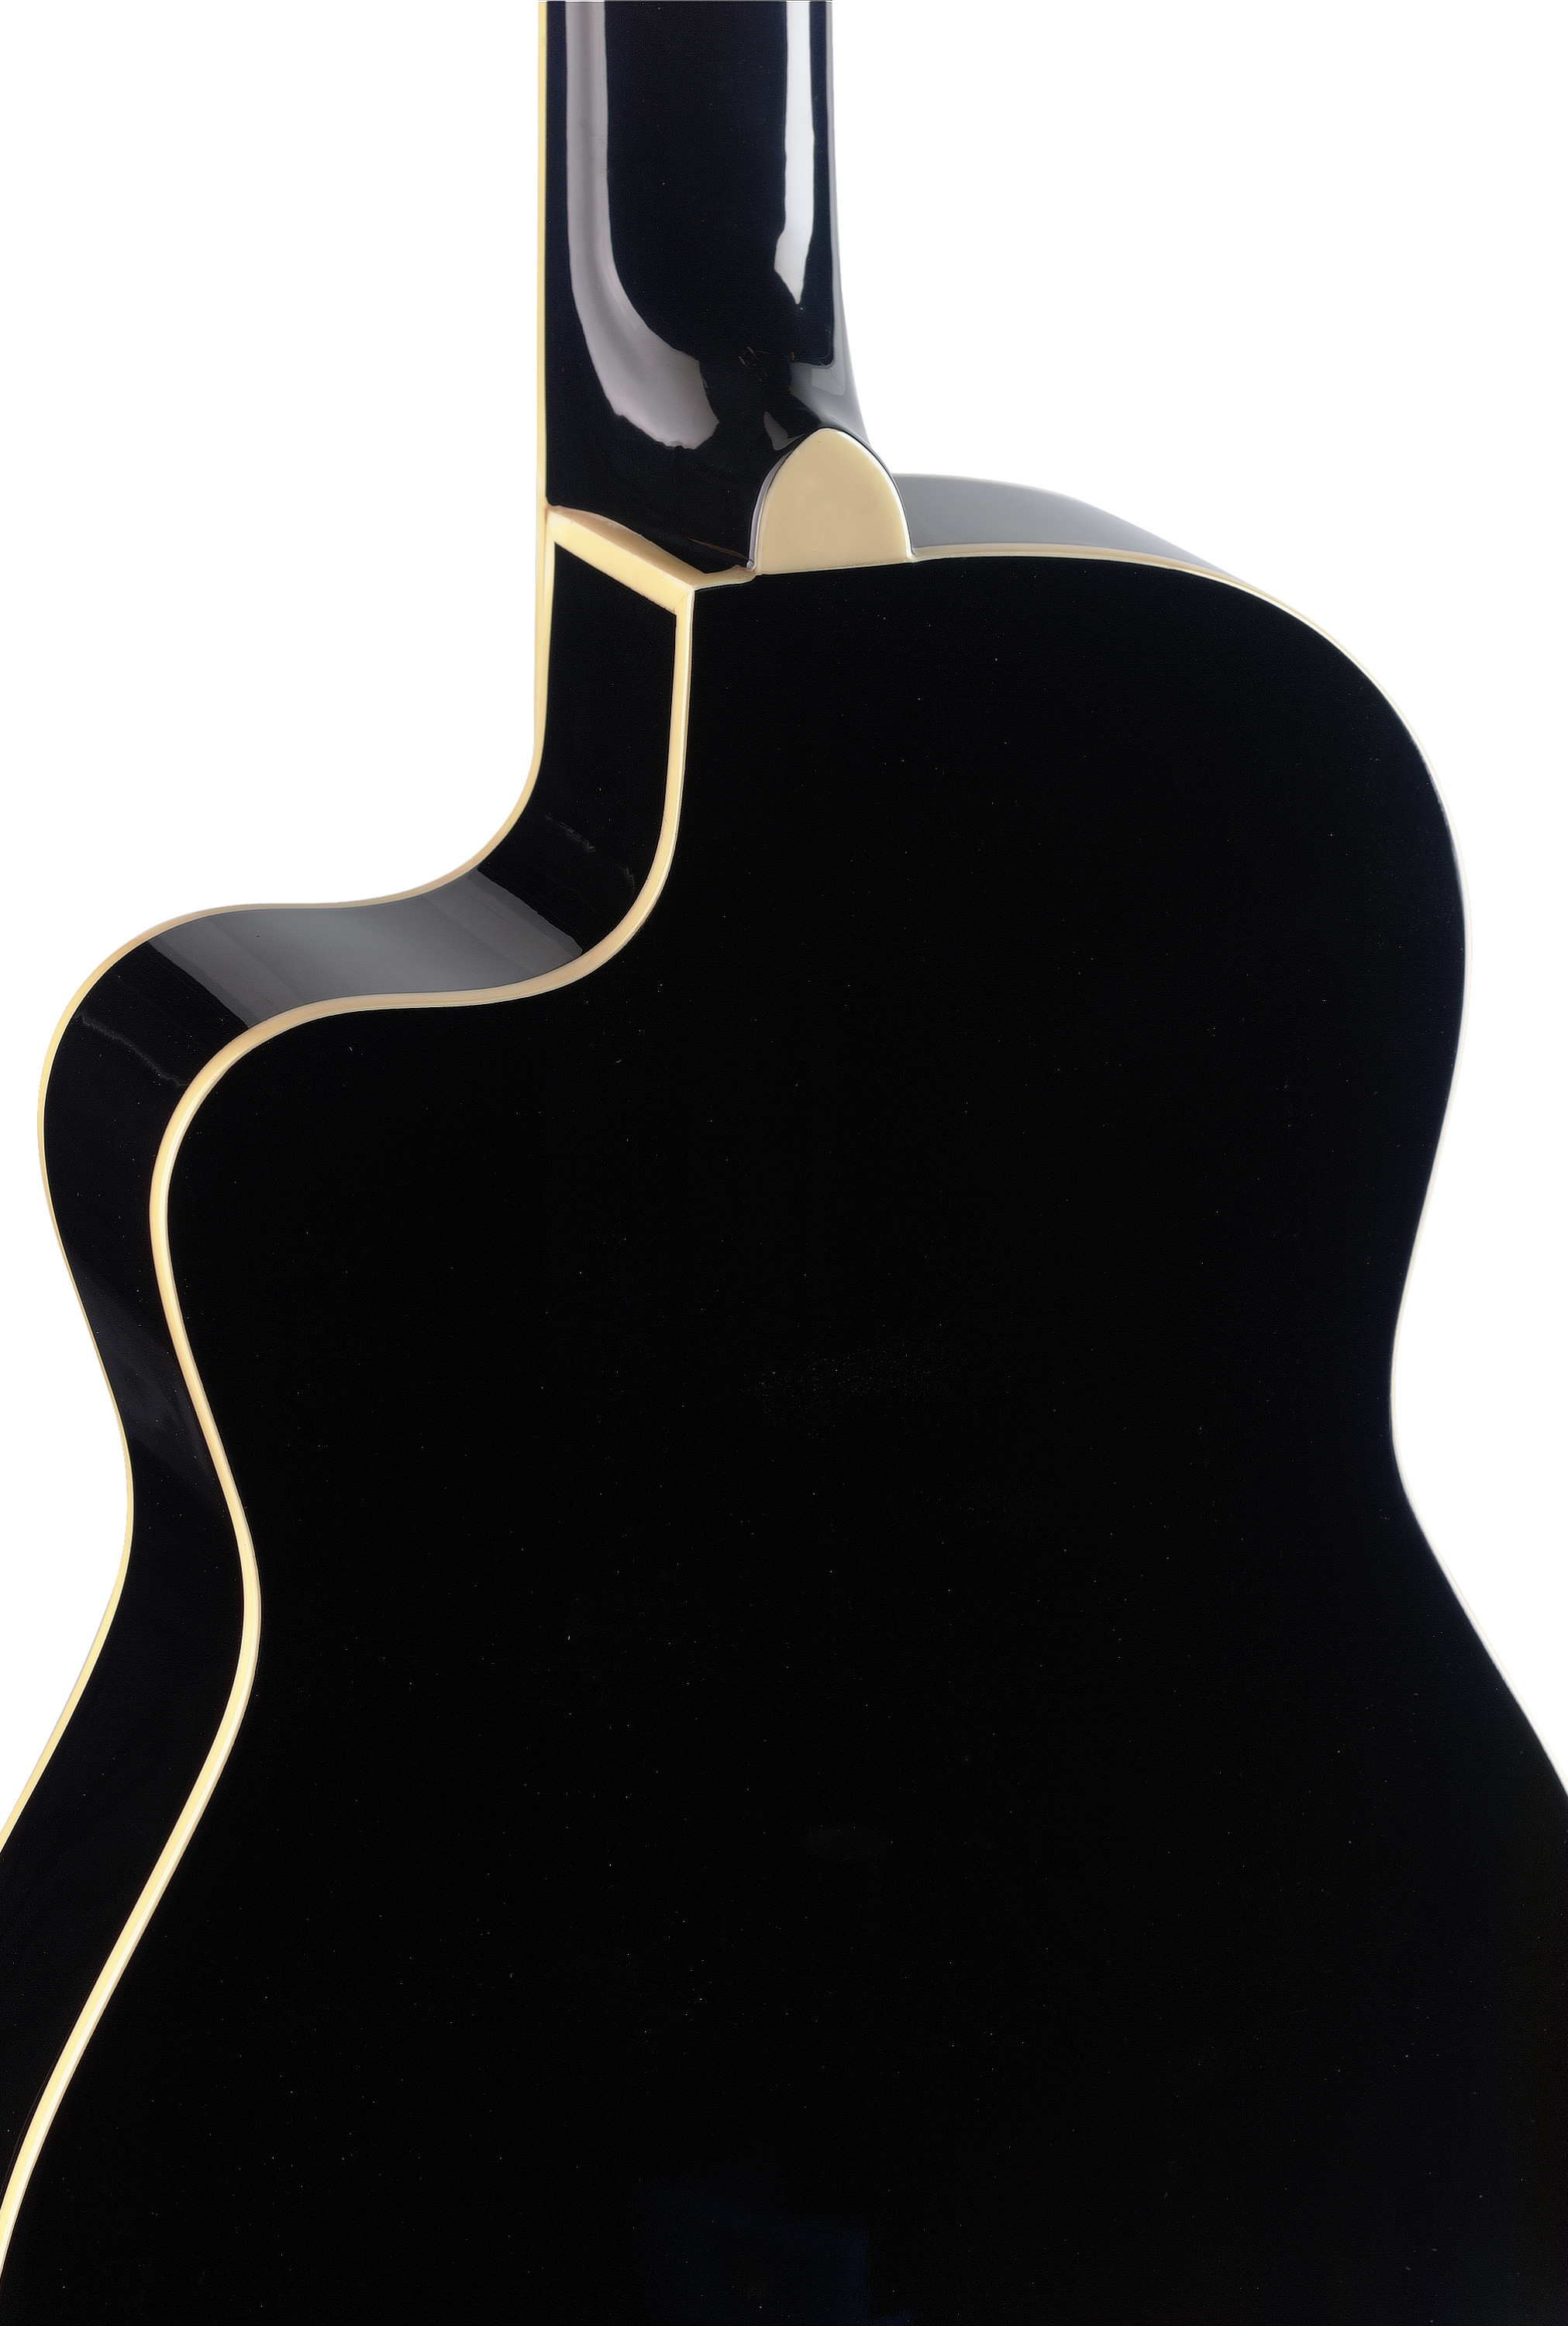 Stagg C546tce Bk Cw Epicea Catalpa - Black - Klassieke gitaar 4/4 - Variation 1